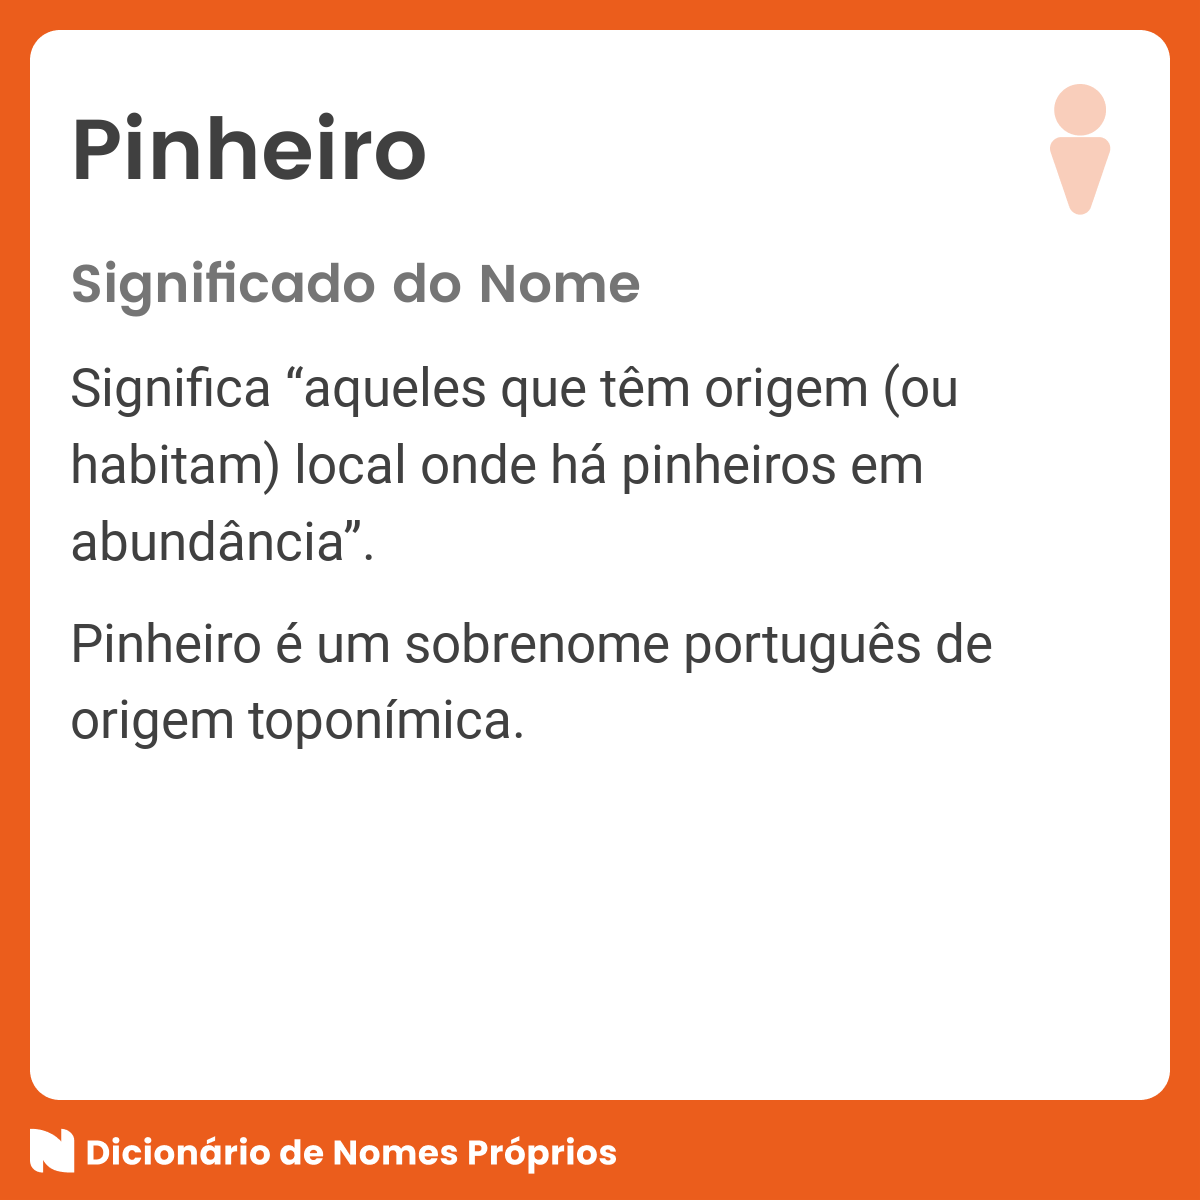 Significado do nome Pinheiro - Dicionário de Nomes Próprios